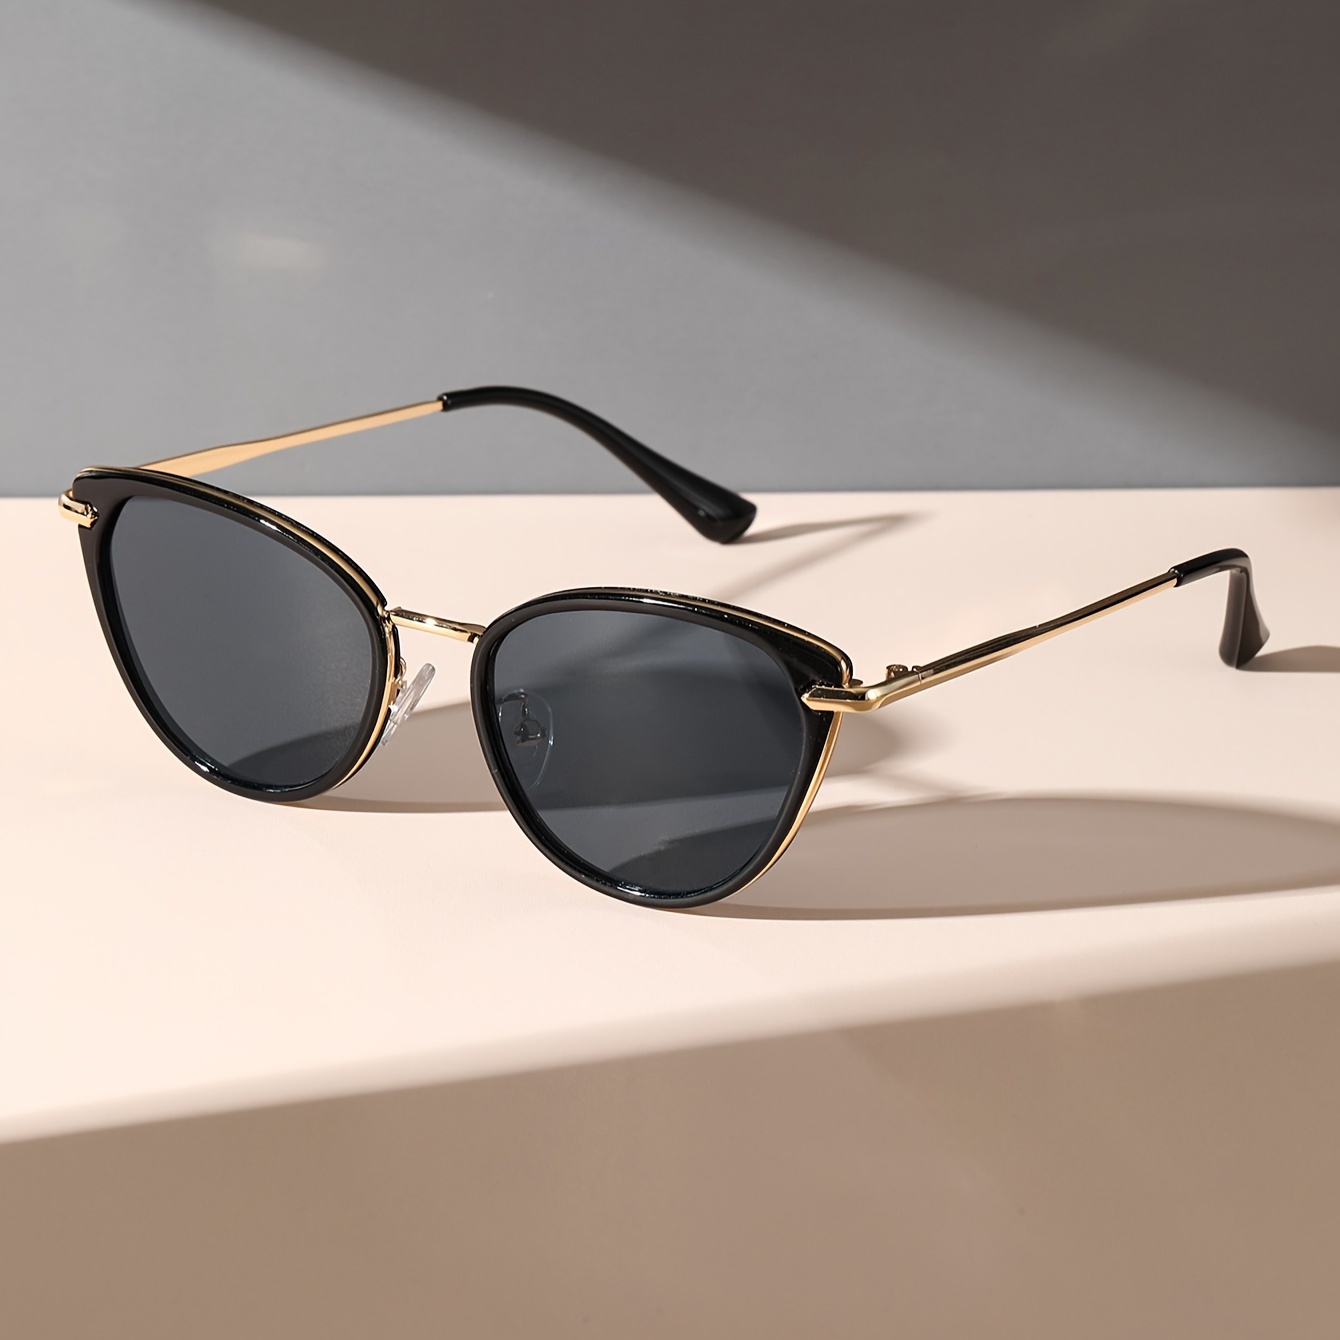 

Cat Eye Frame Fashion Glasses For Women Men Anti Glare Sun Shades Glasses For Driving Beach Travel